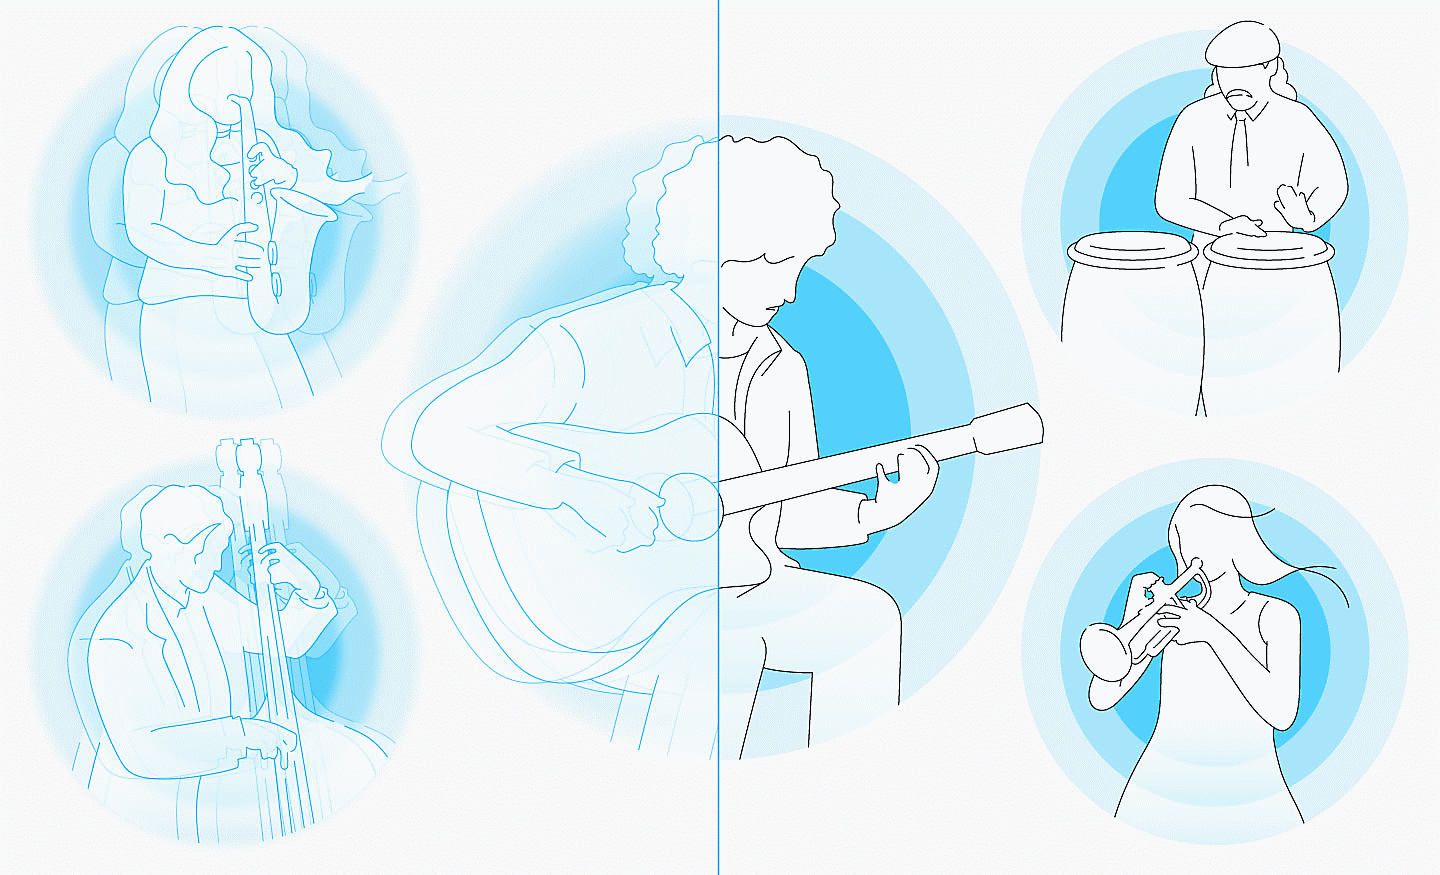 Slika ljudi, ki igrajo na glasbene inštrumente, z modrimi krogi v ozadju, leva stran je zamegljena, desna stran pa je jasna